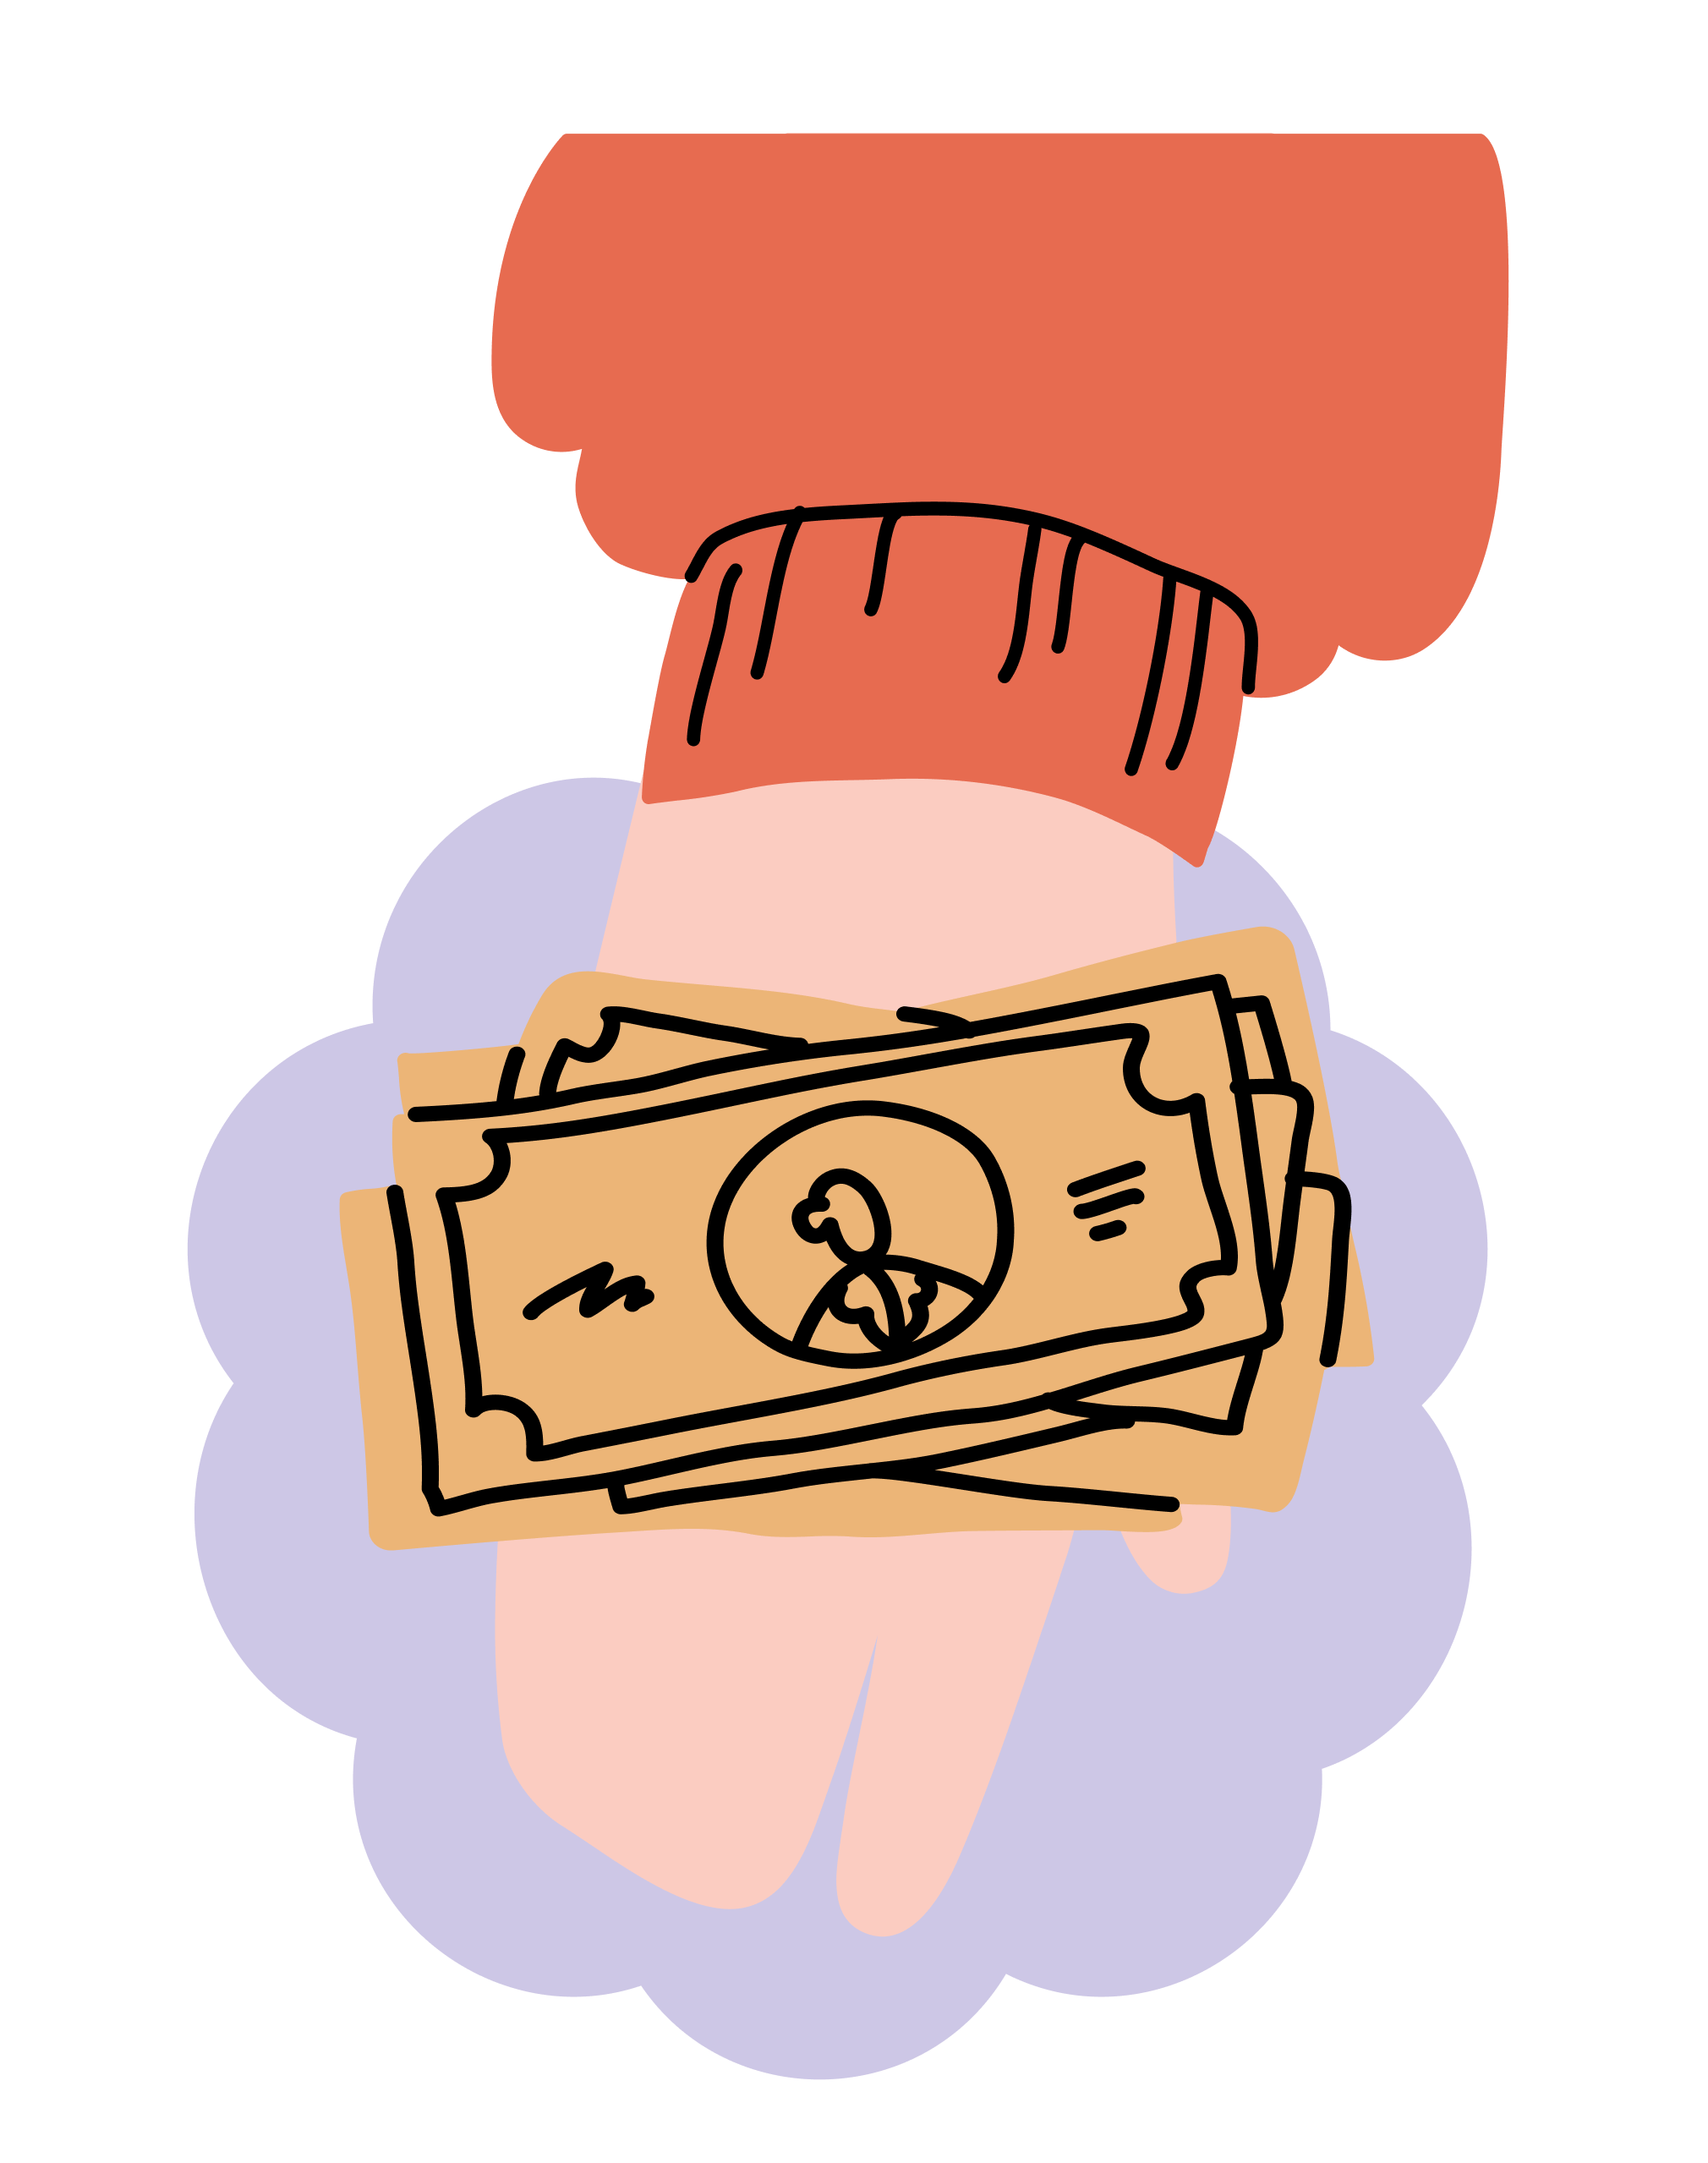 Un brazo que sobresale, vestido con un jersey naranja, mostrando billetes de dólar en la palma de la mano.